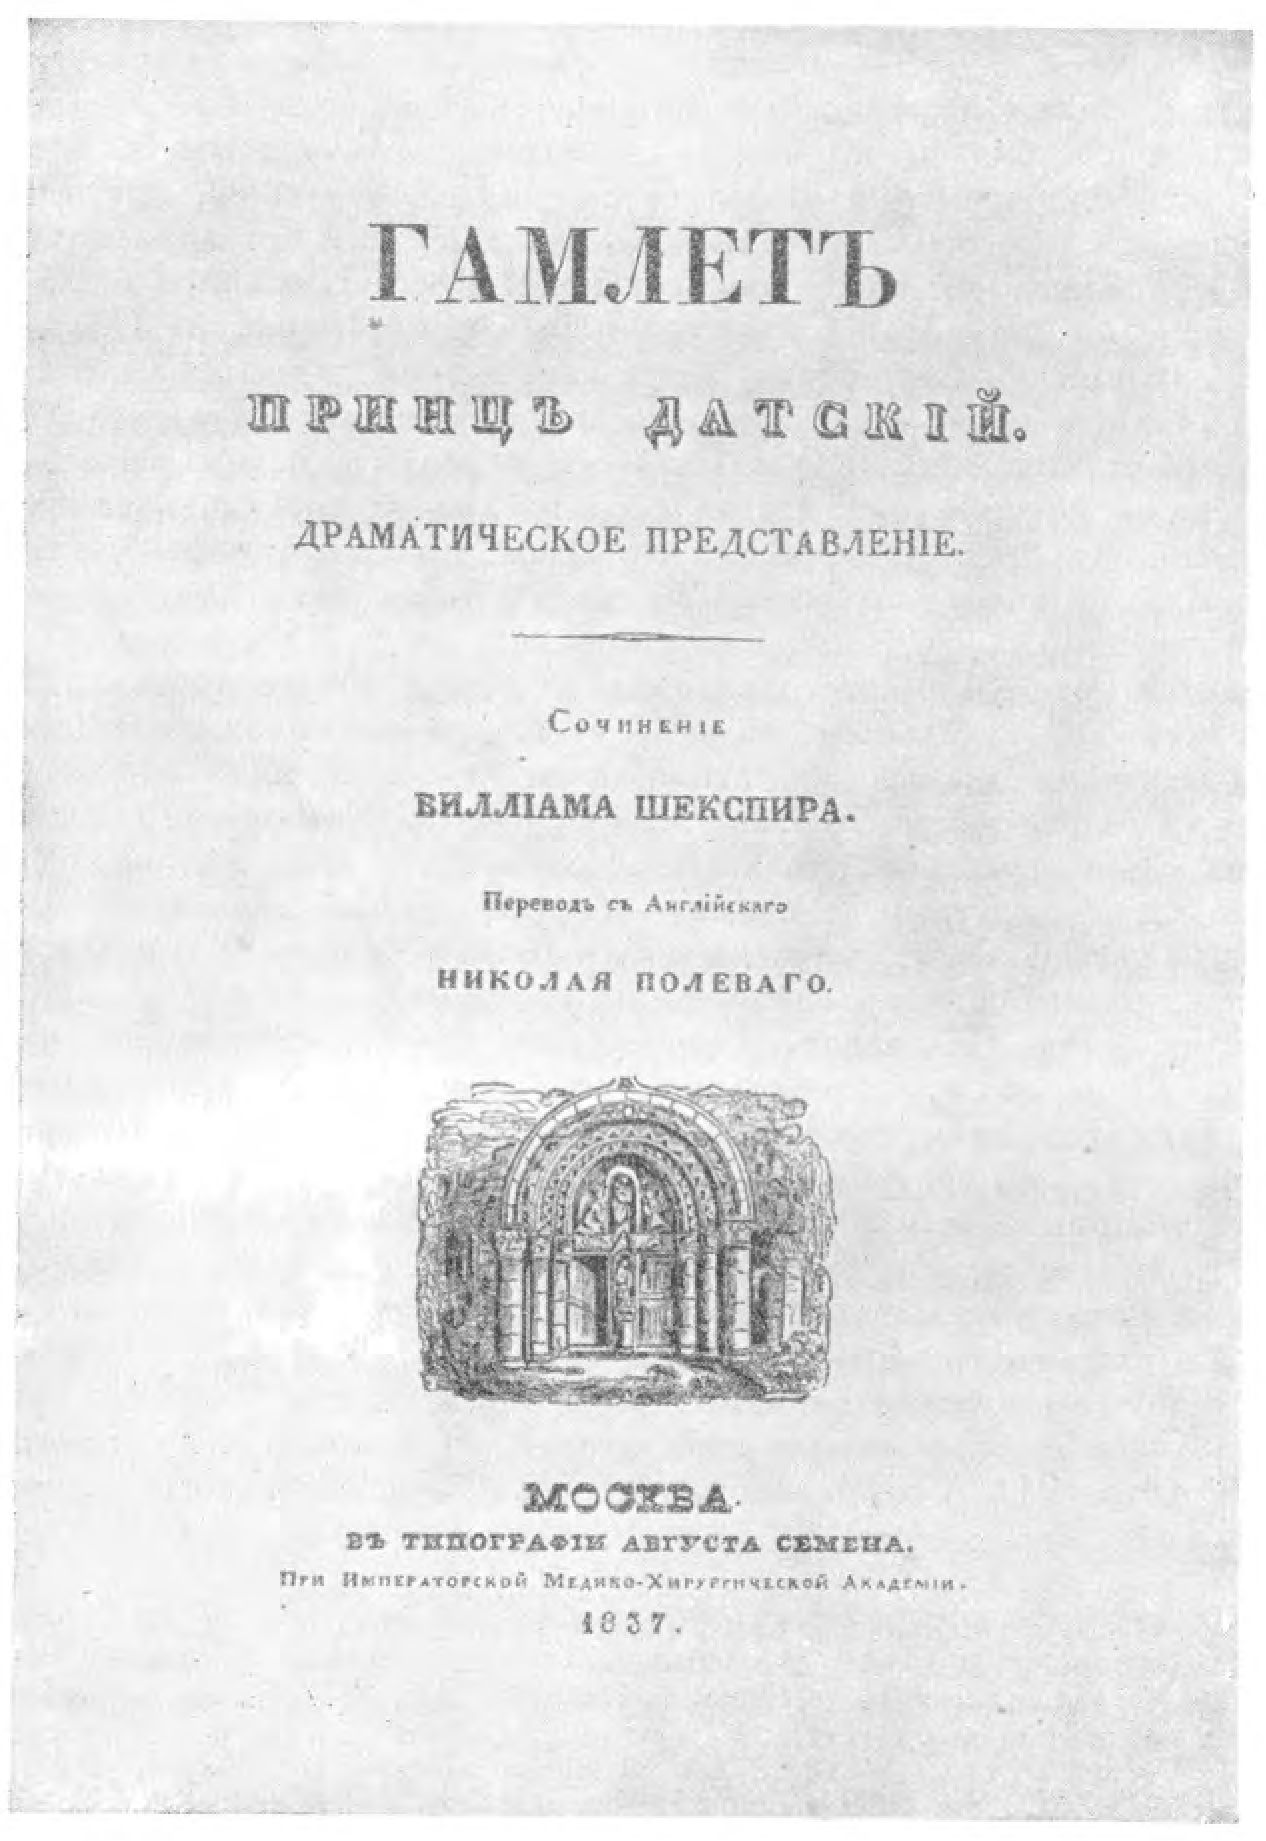 «Гамлет, принц датский». Перевод Н.А. Полевого. Москва. 1837. Титульный лист